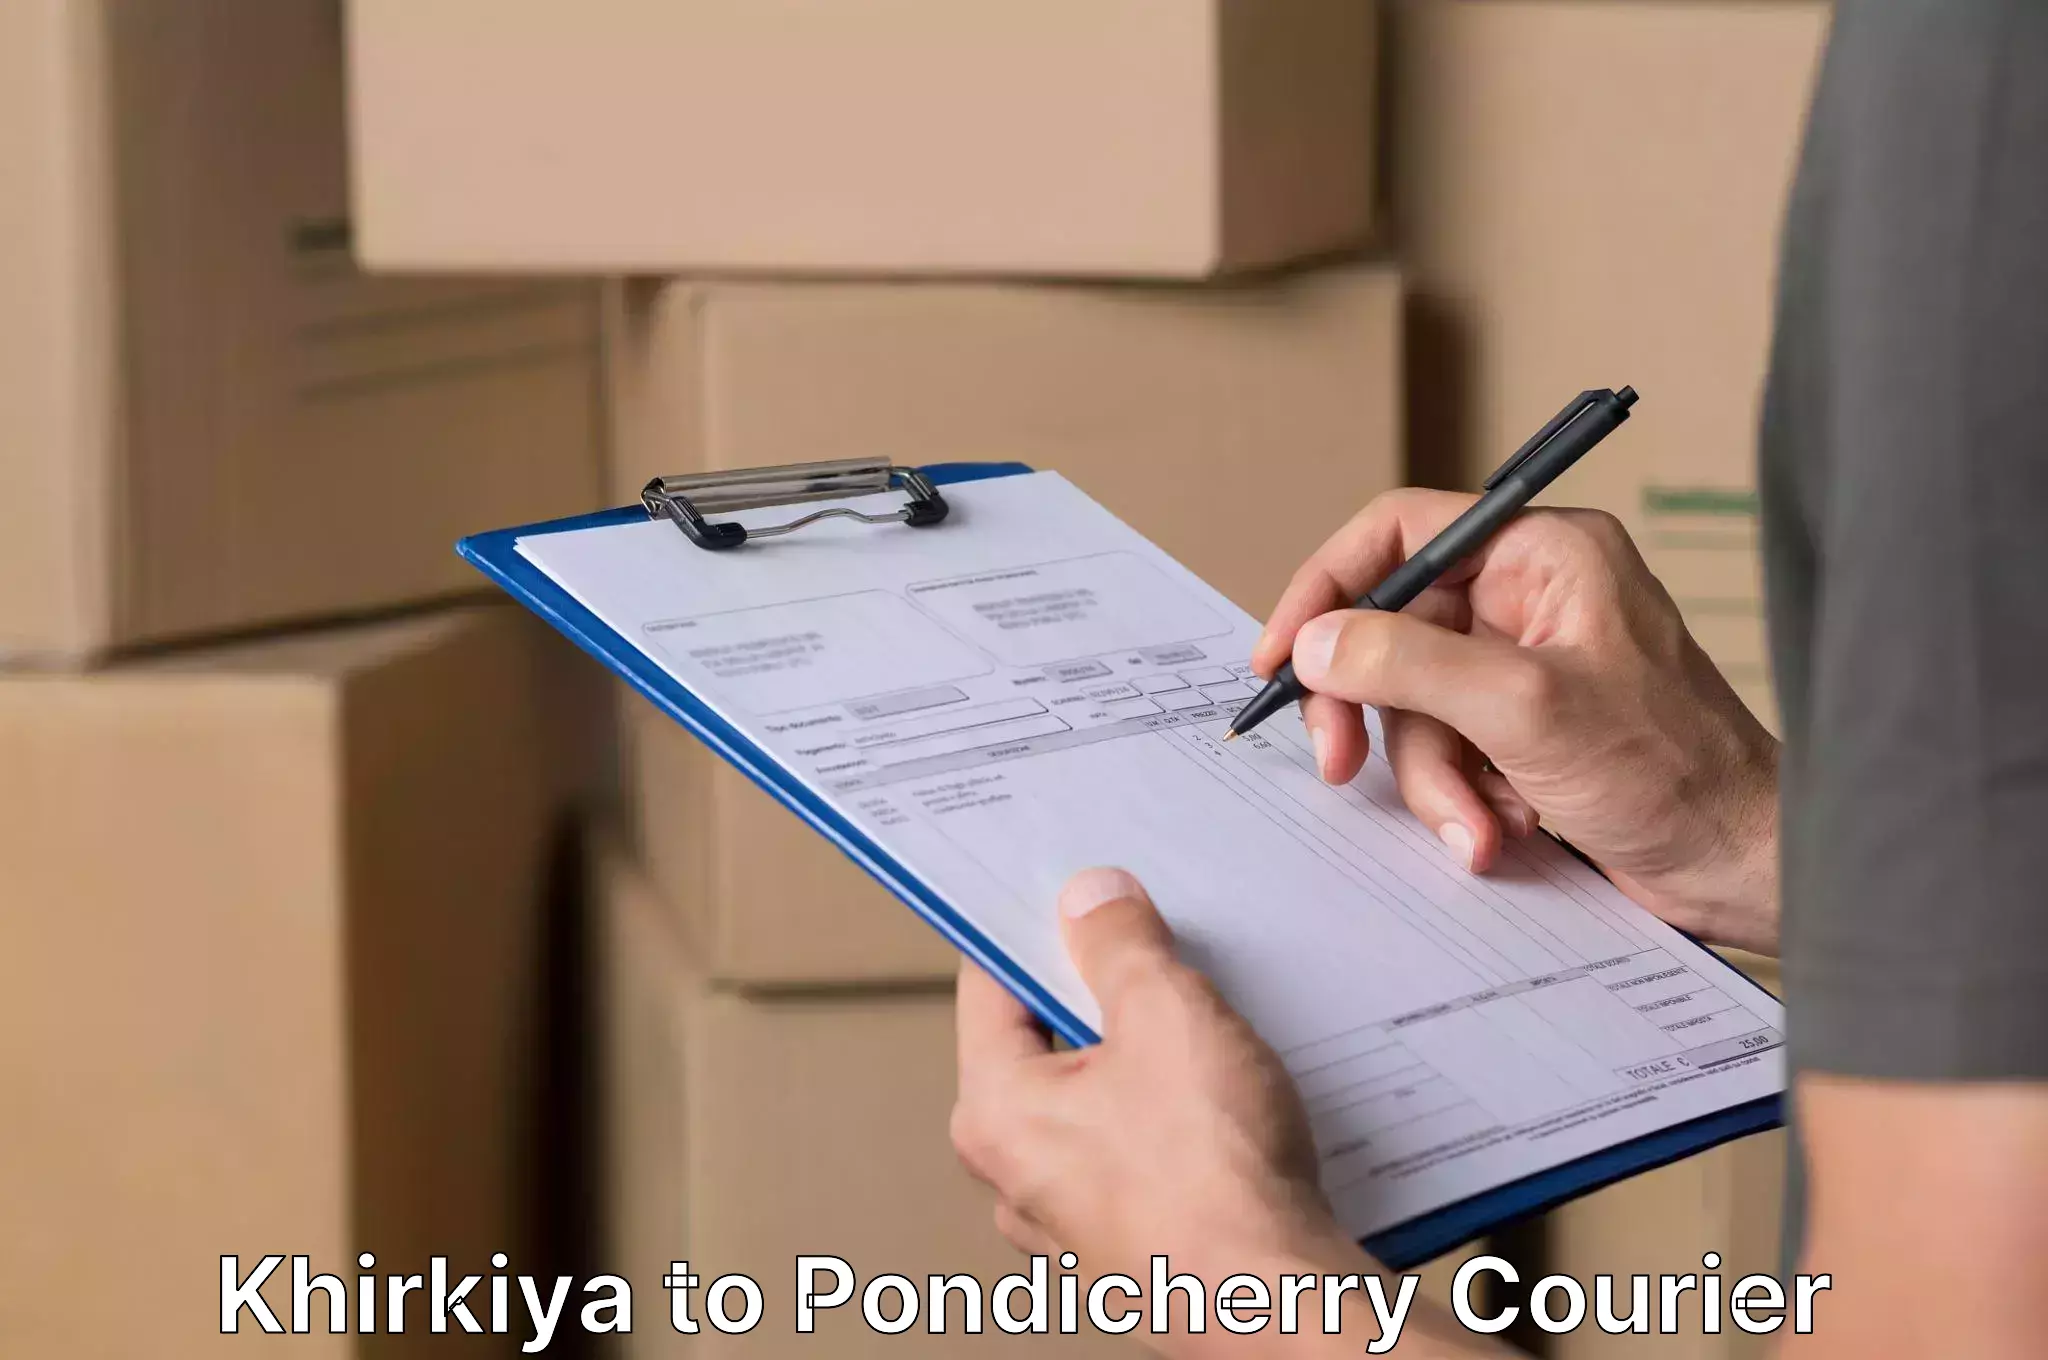 Affordable relocation services Khirkiya to Pondicherry